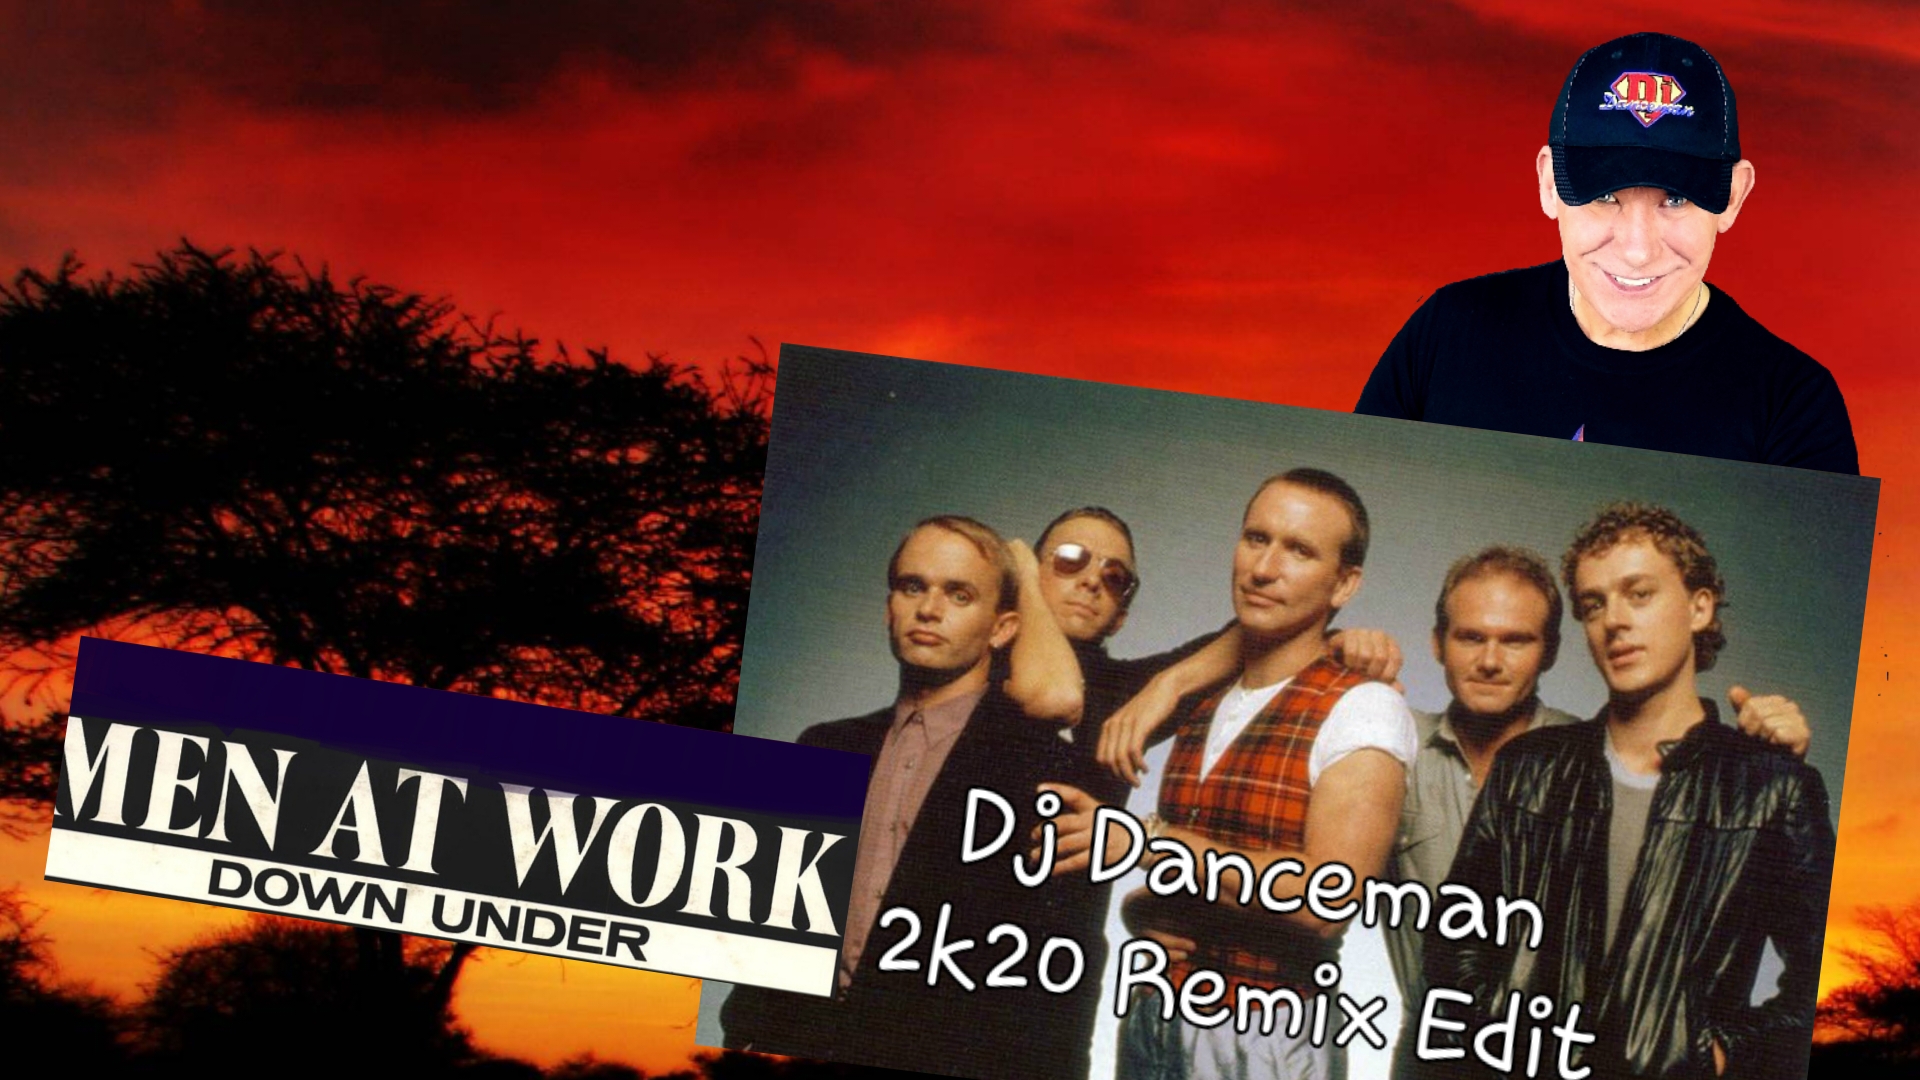 Man at Work-Down Under (Dj Danceman 2k20 Remix